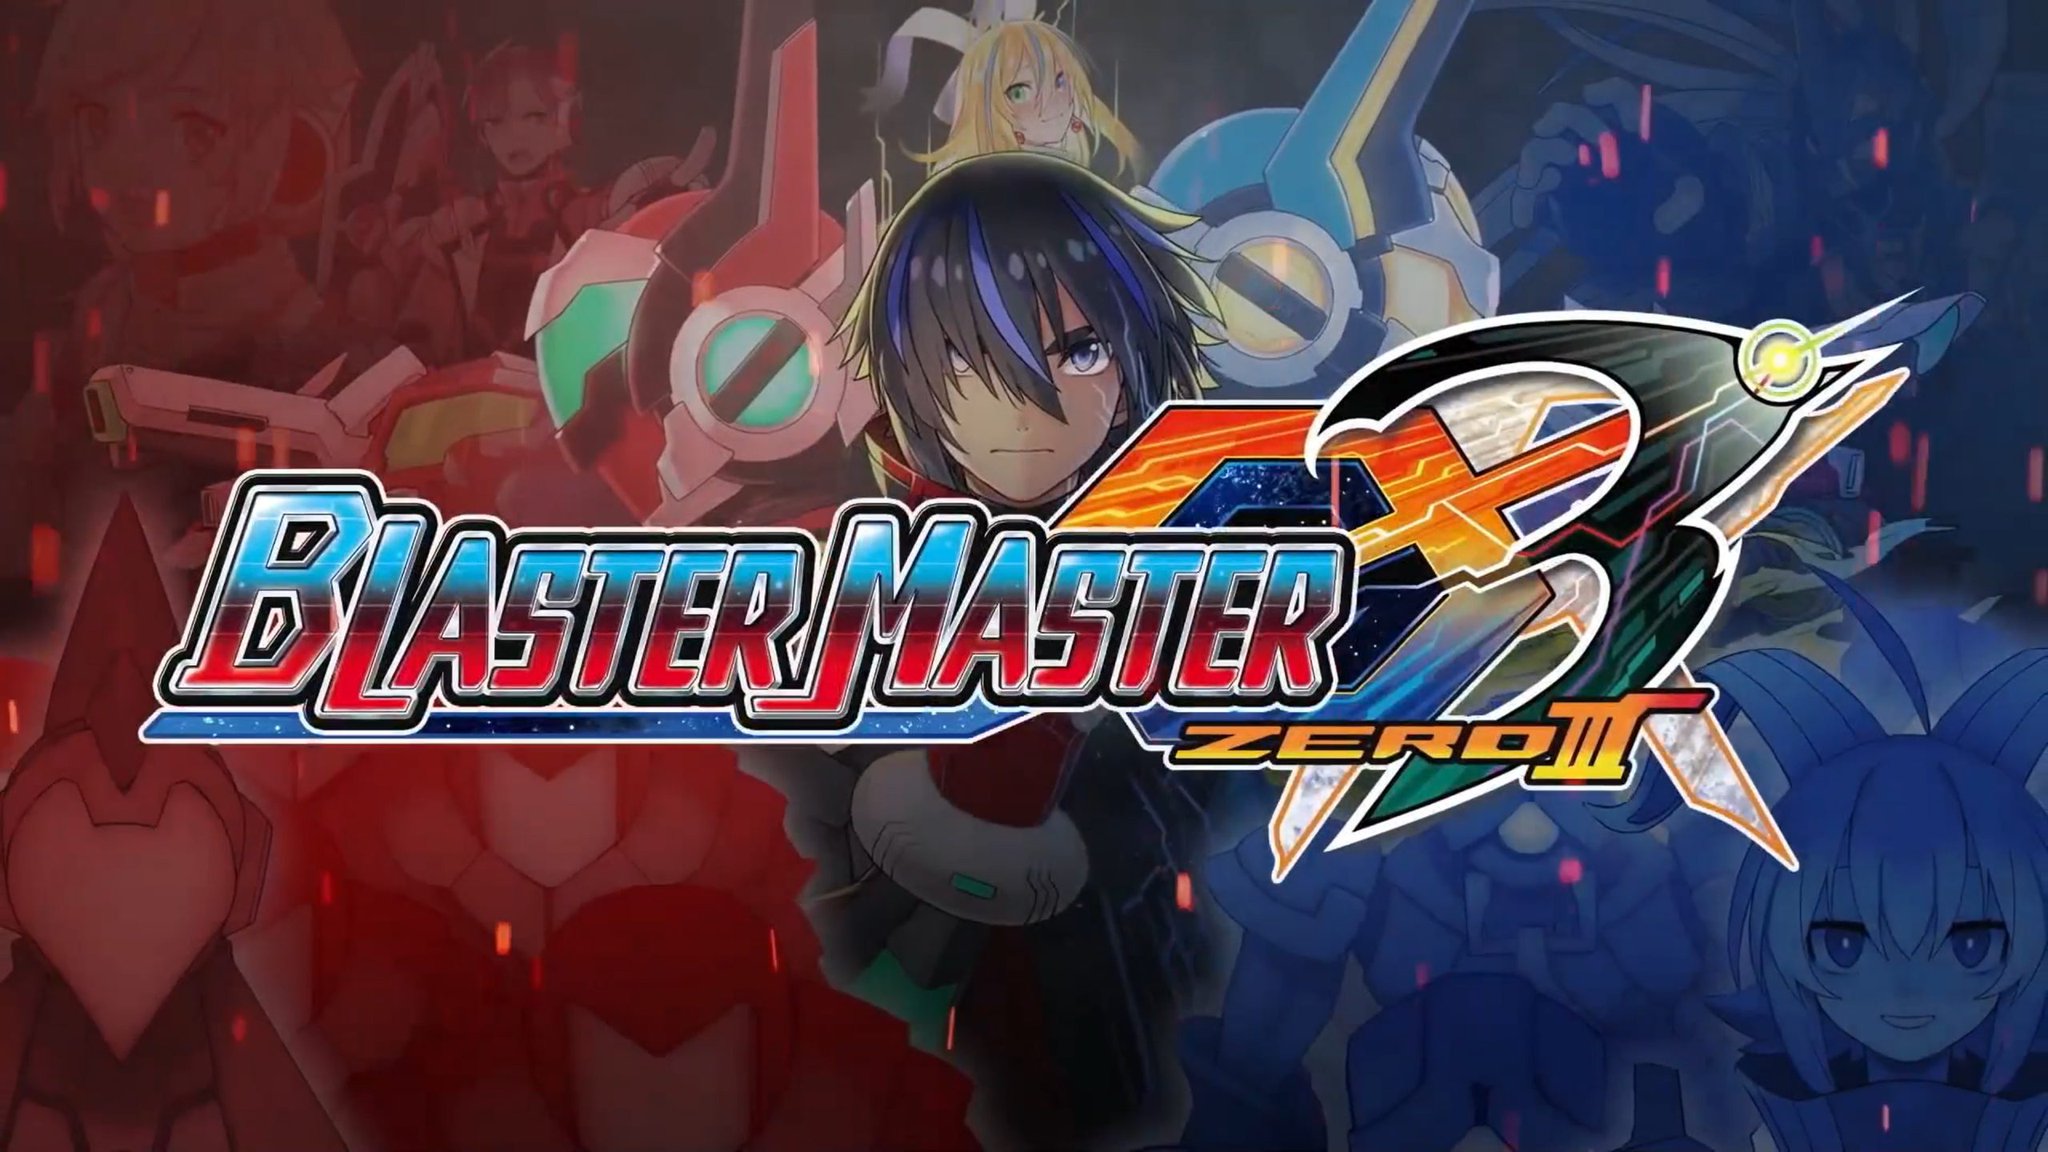 Blaster Master Zero 3 Yaziswa